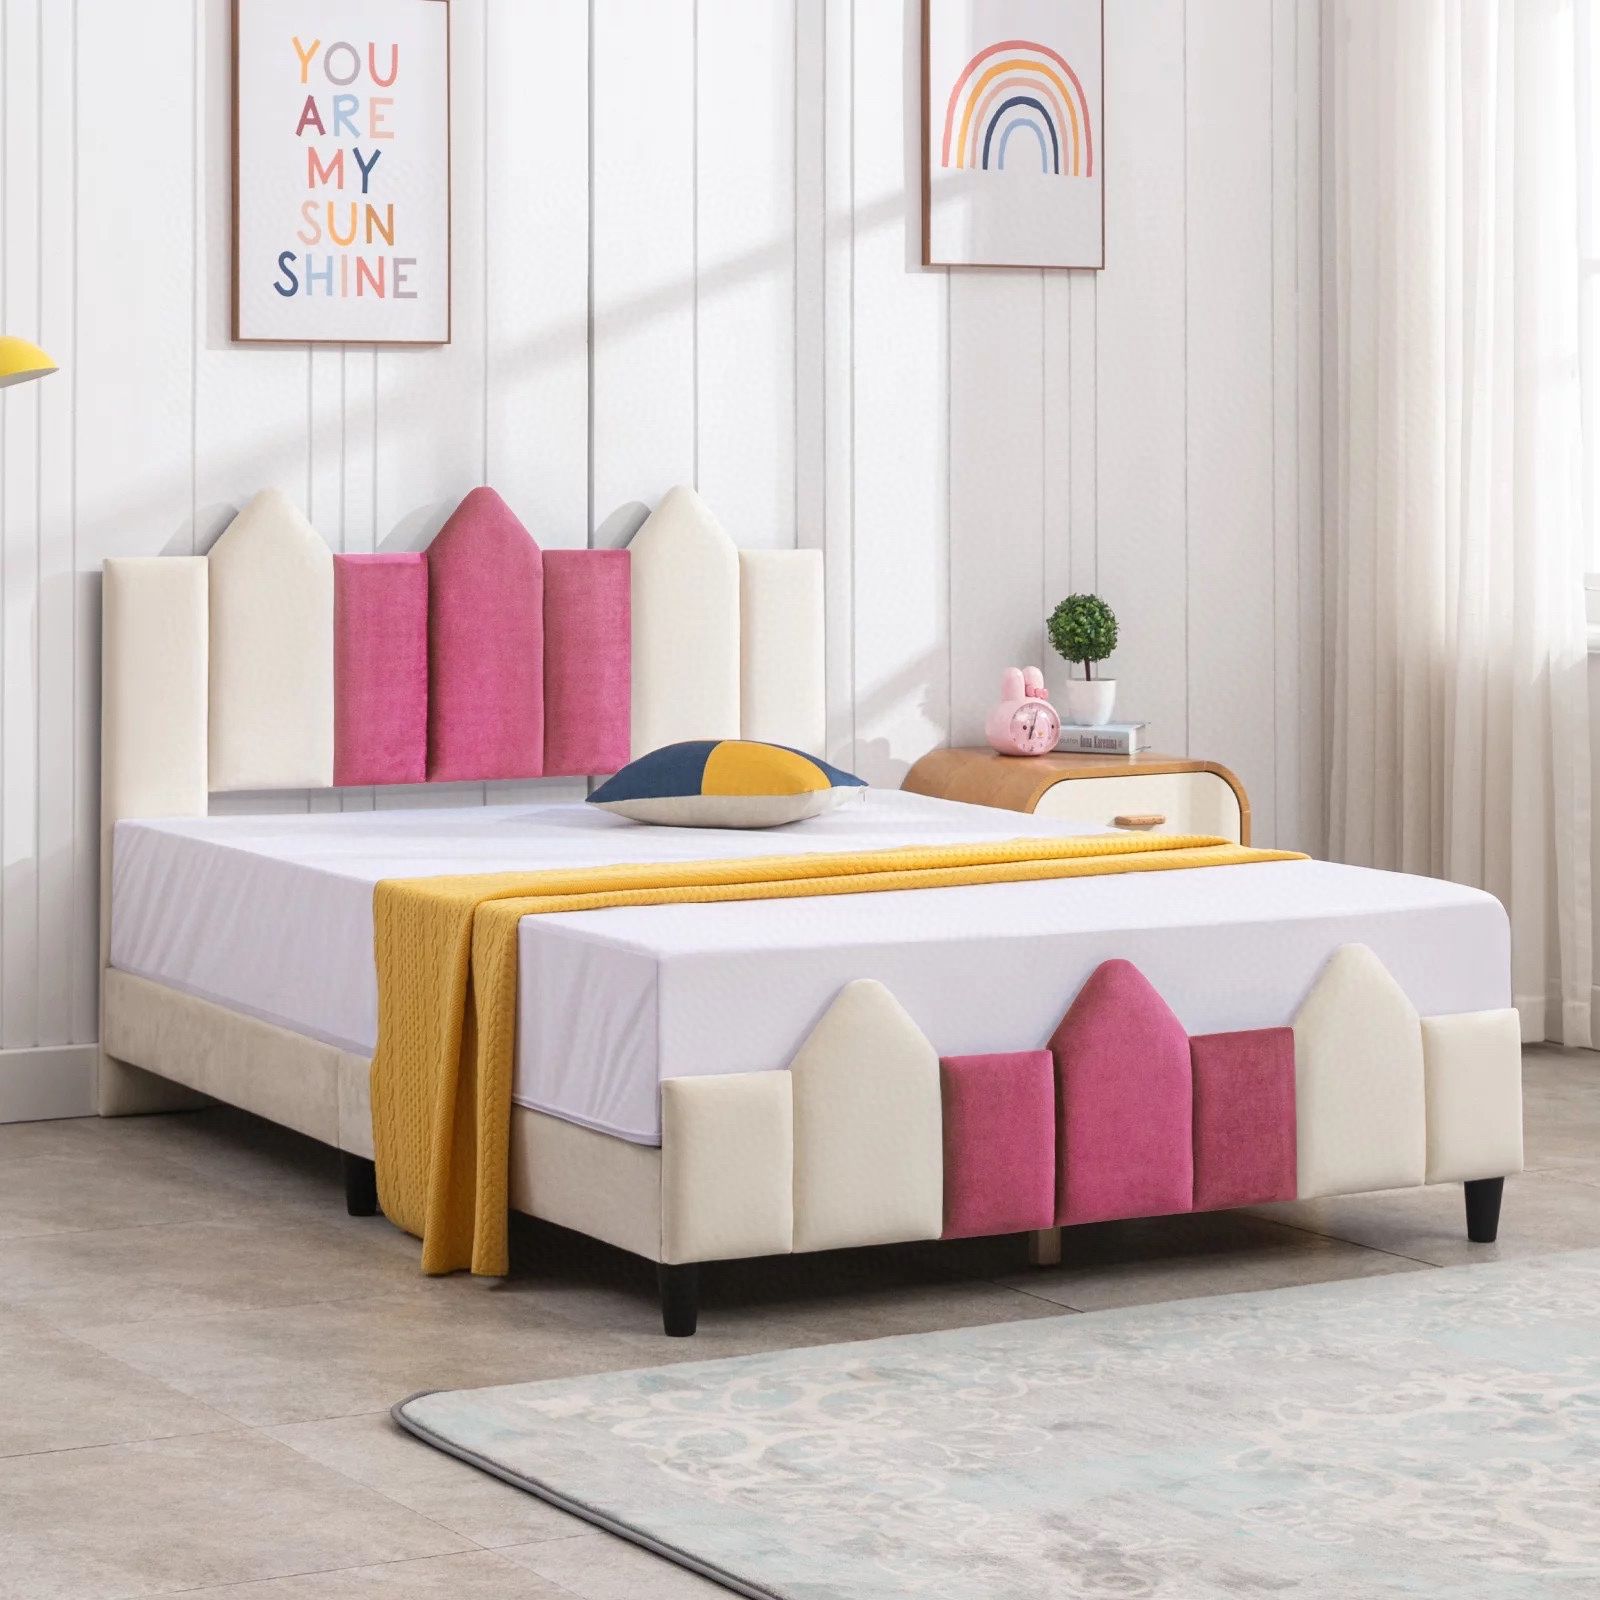 Full Bed Frames for Kids, Wood Upholstered Bed Platform with Headboard, Children Bedroom Kids Bed